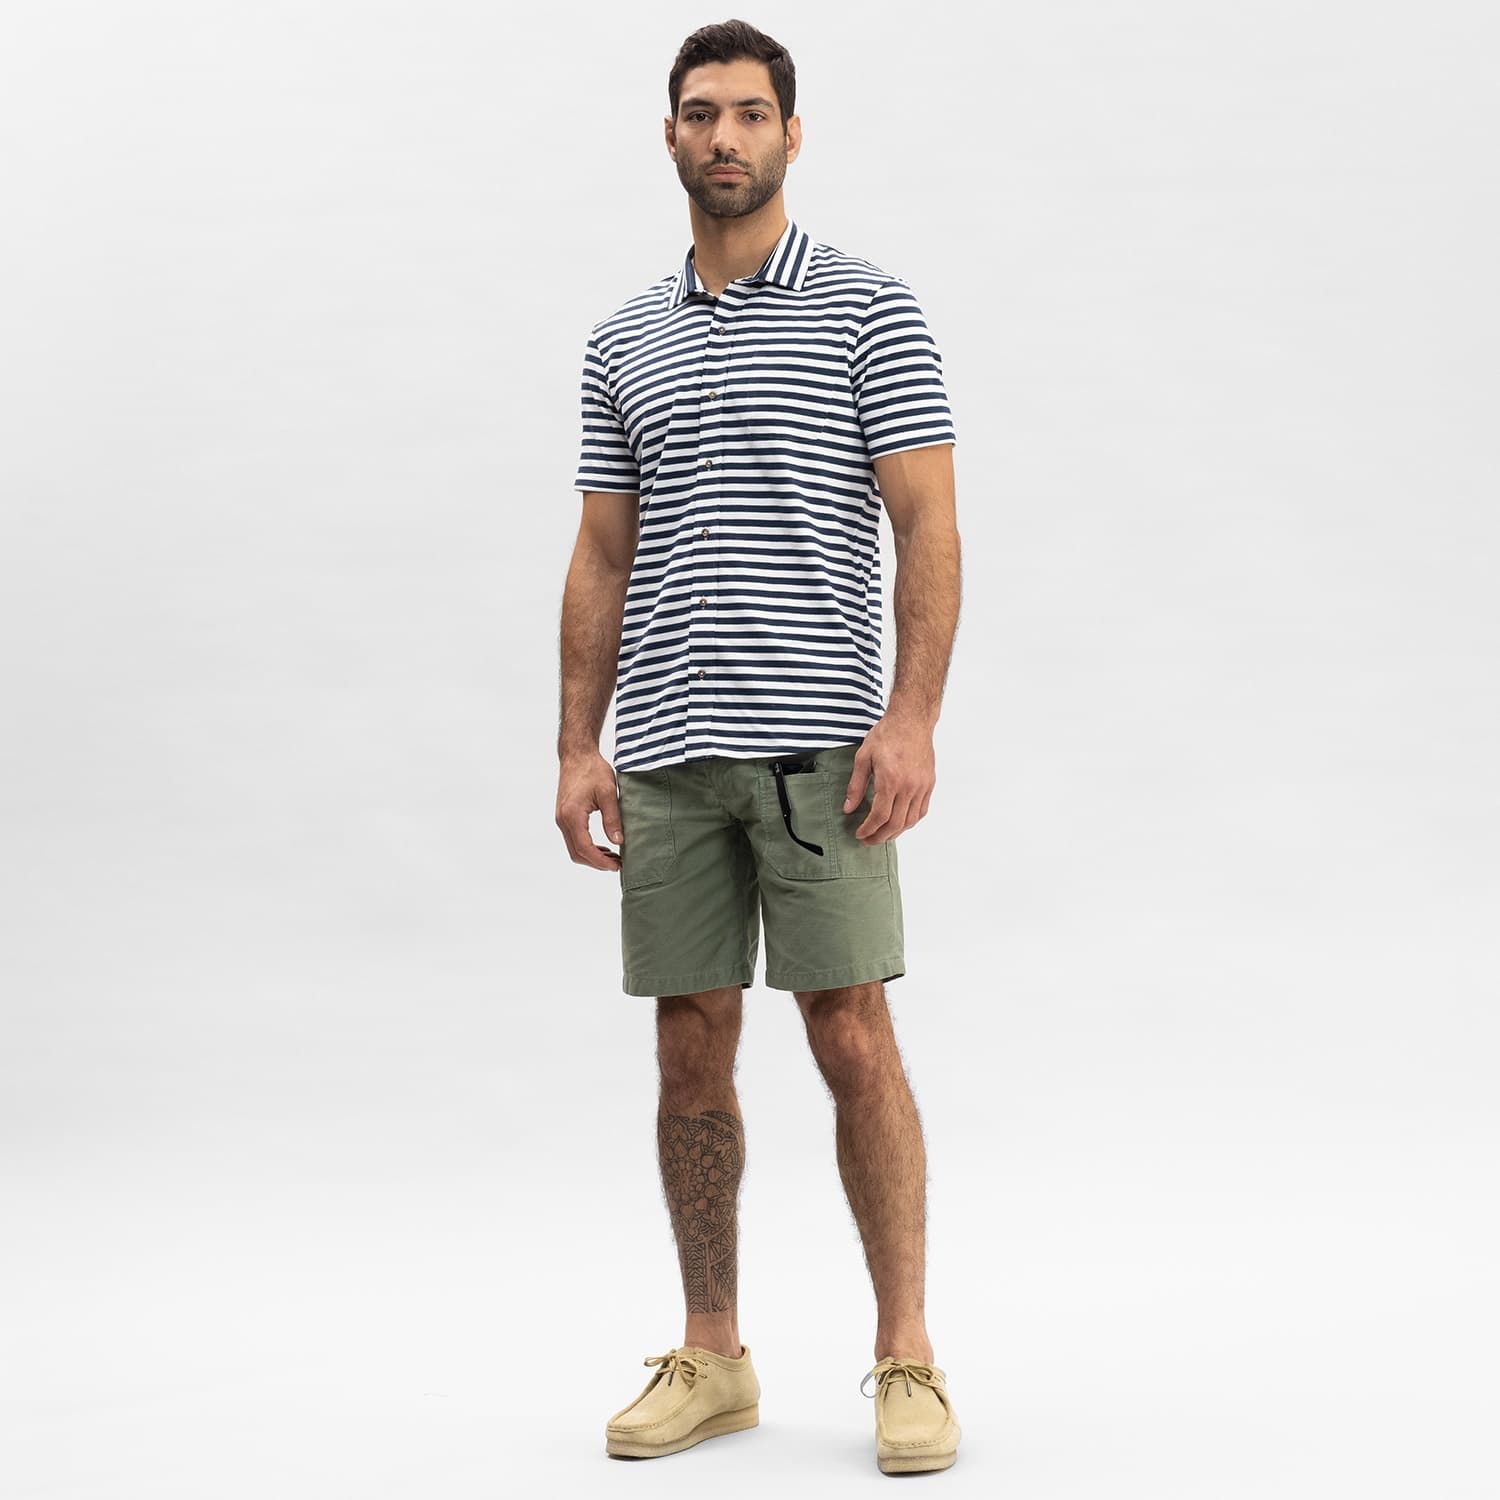 Safari Utility Short - Green - Men's Shorts Made in USA